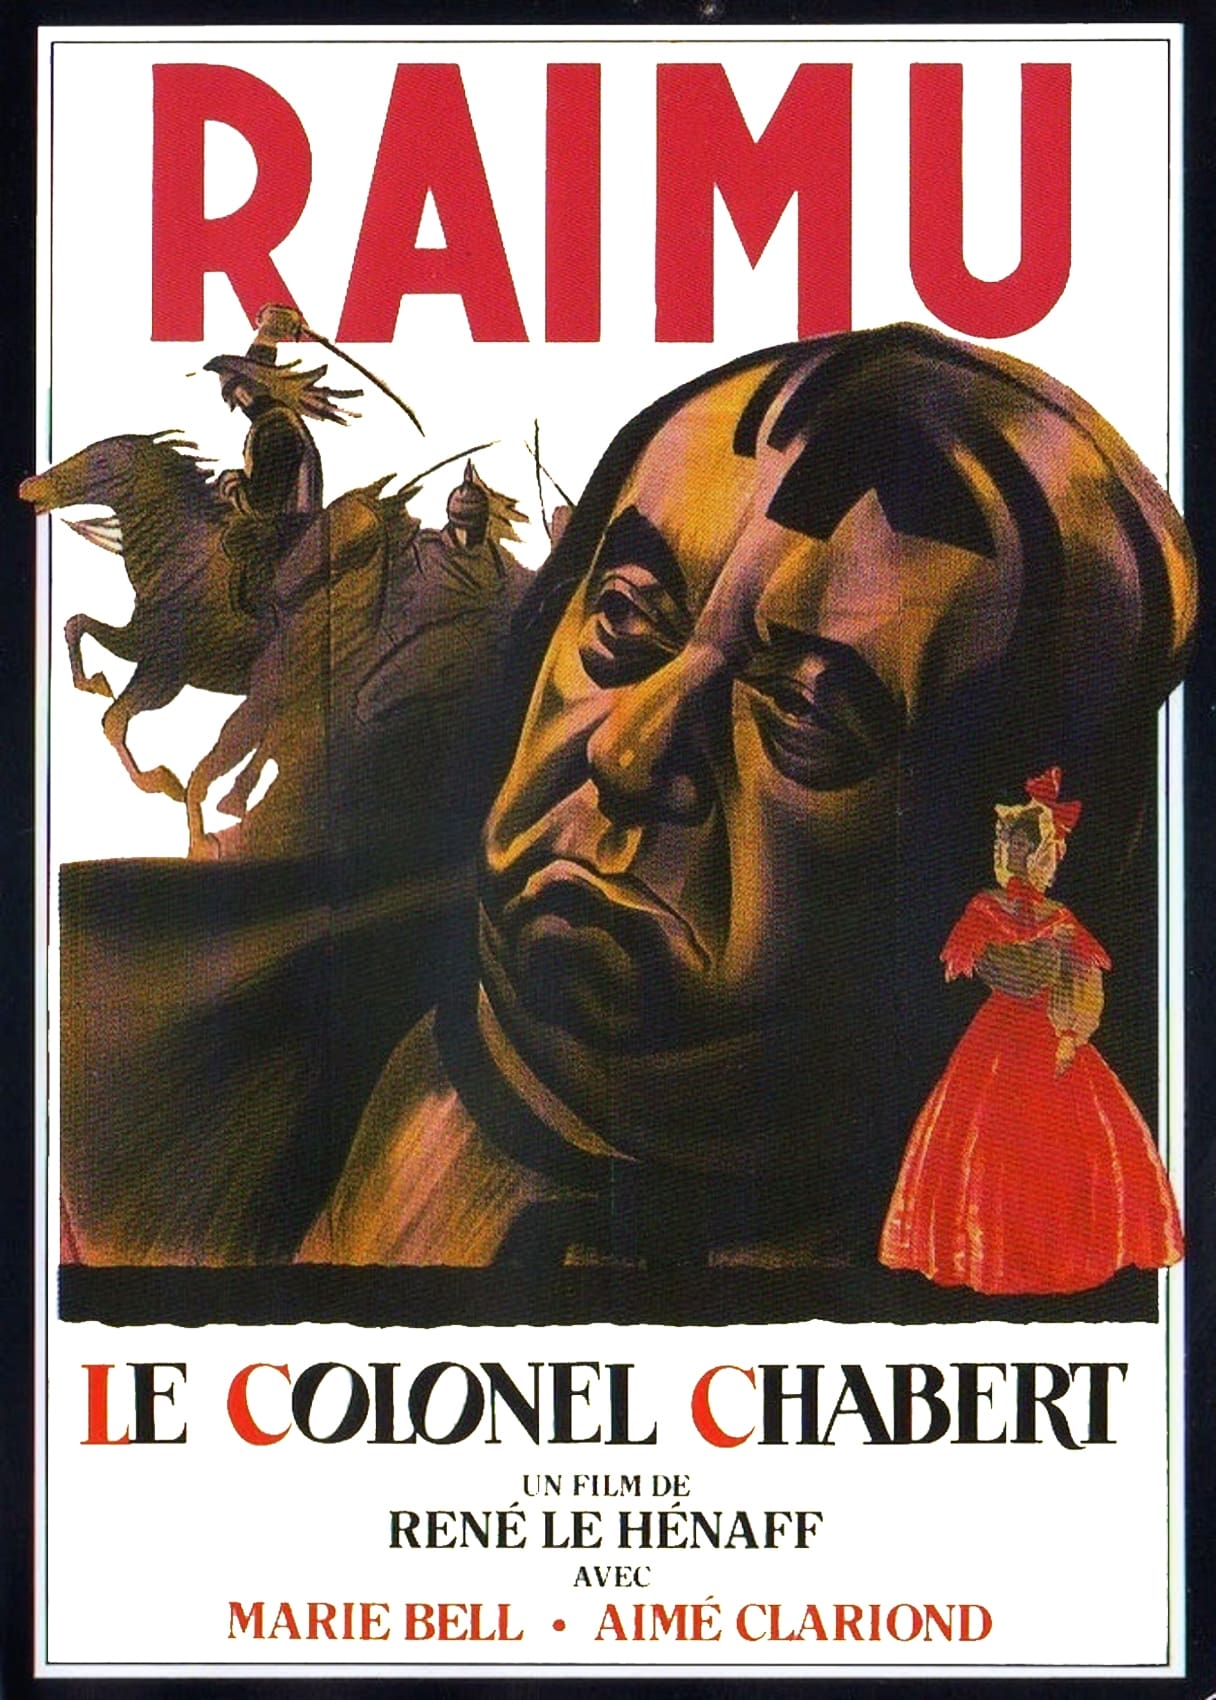 Colonel Chabert (1943)